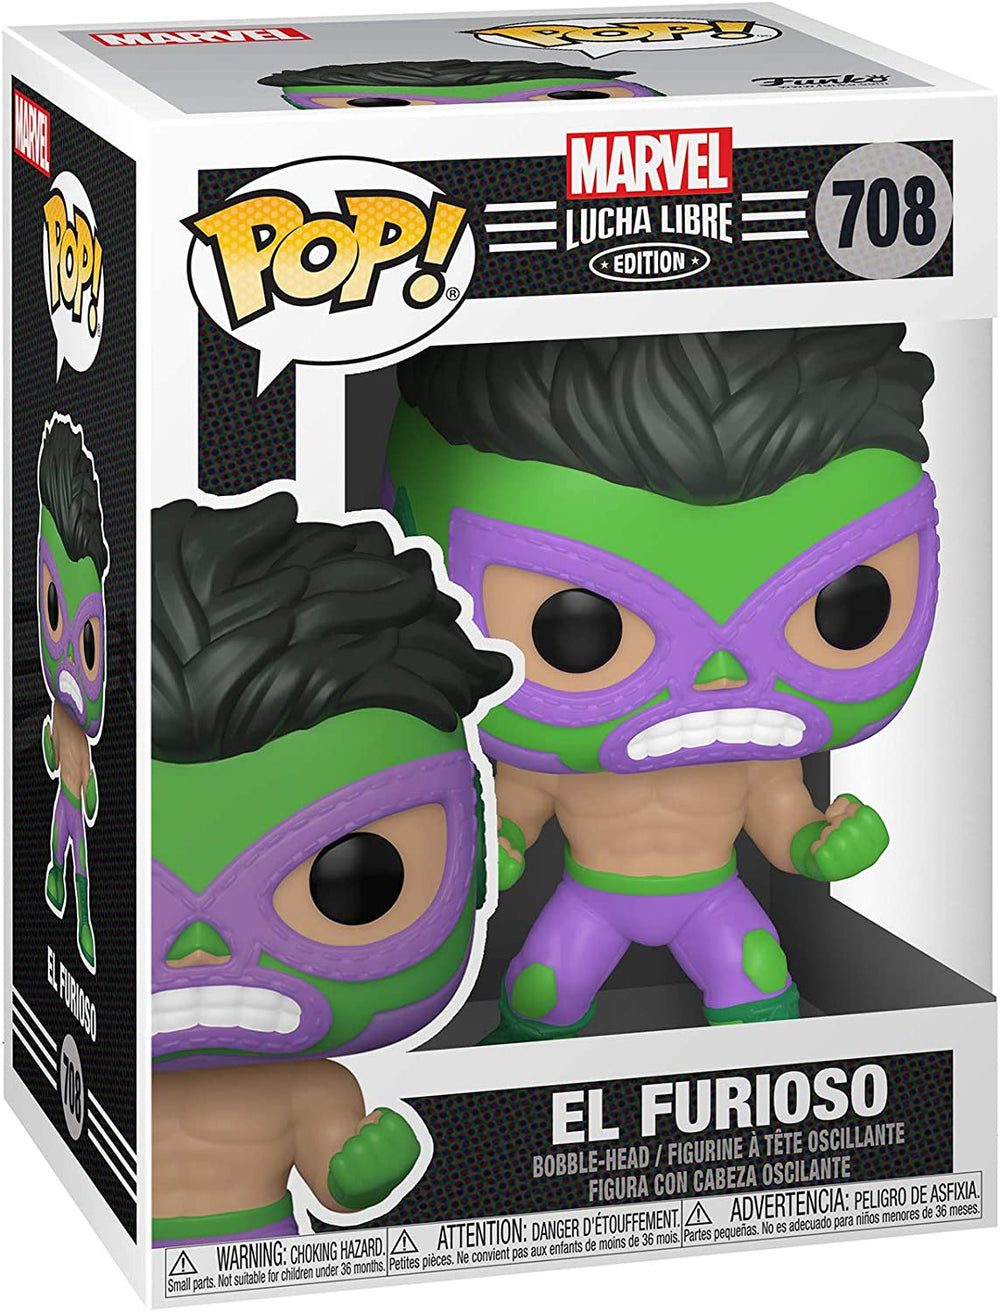 Funko Pop! Marvel Luchadores Hulk Vinyl Figure